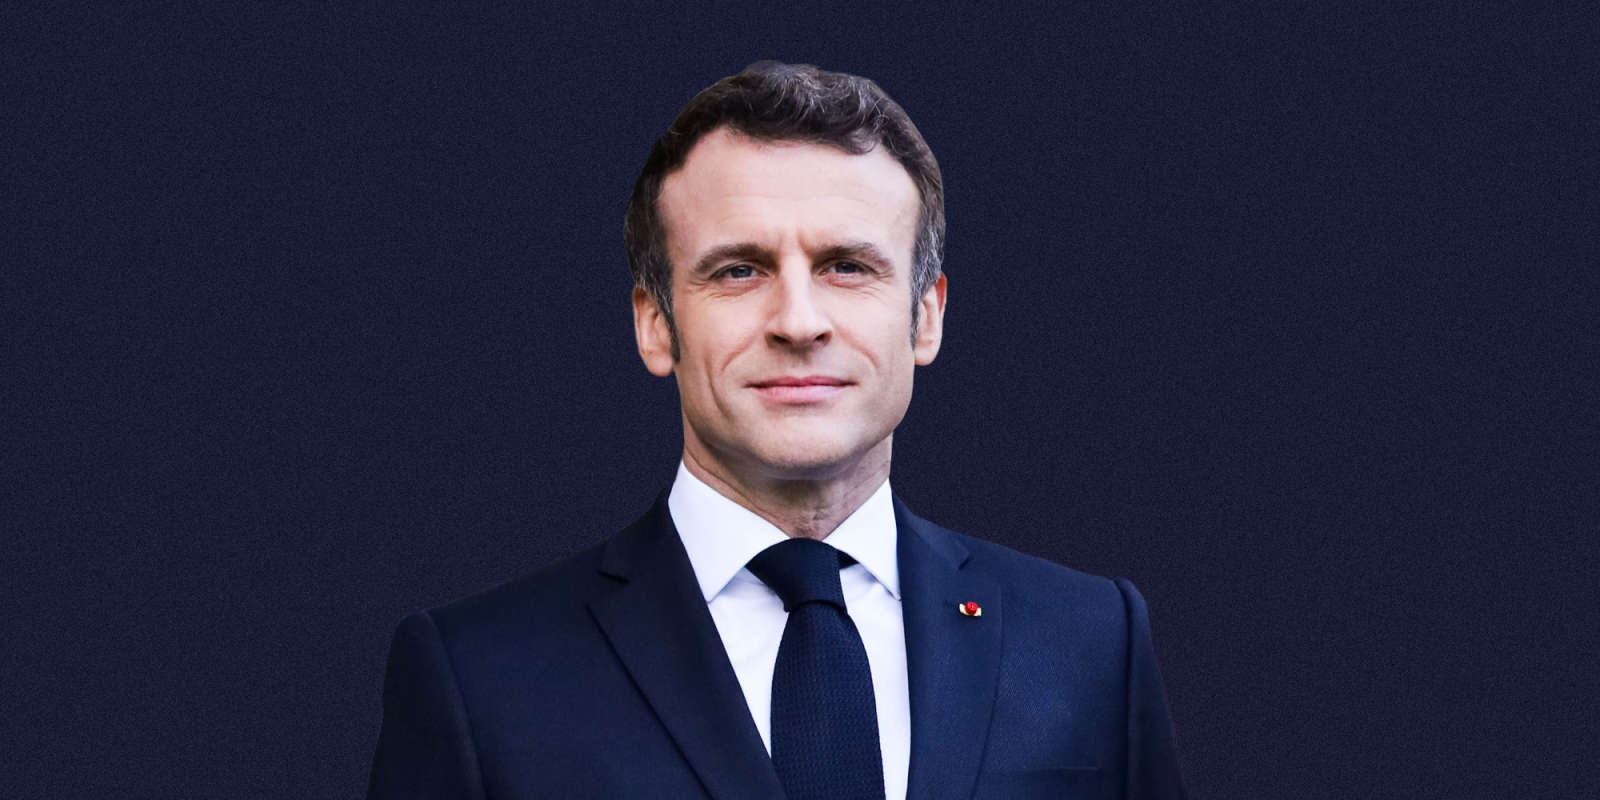 FRANCE : Emmanuel Macron a été réélu président de la République avec 58,2 % des voix, selon les premières estimations.